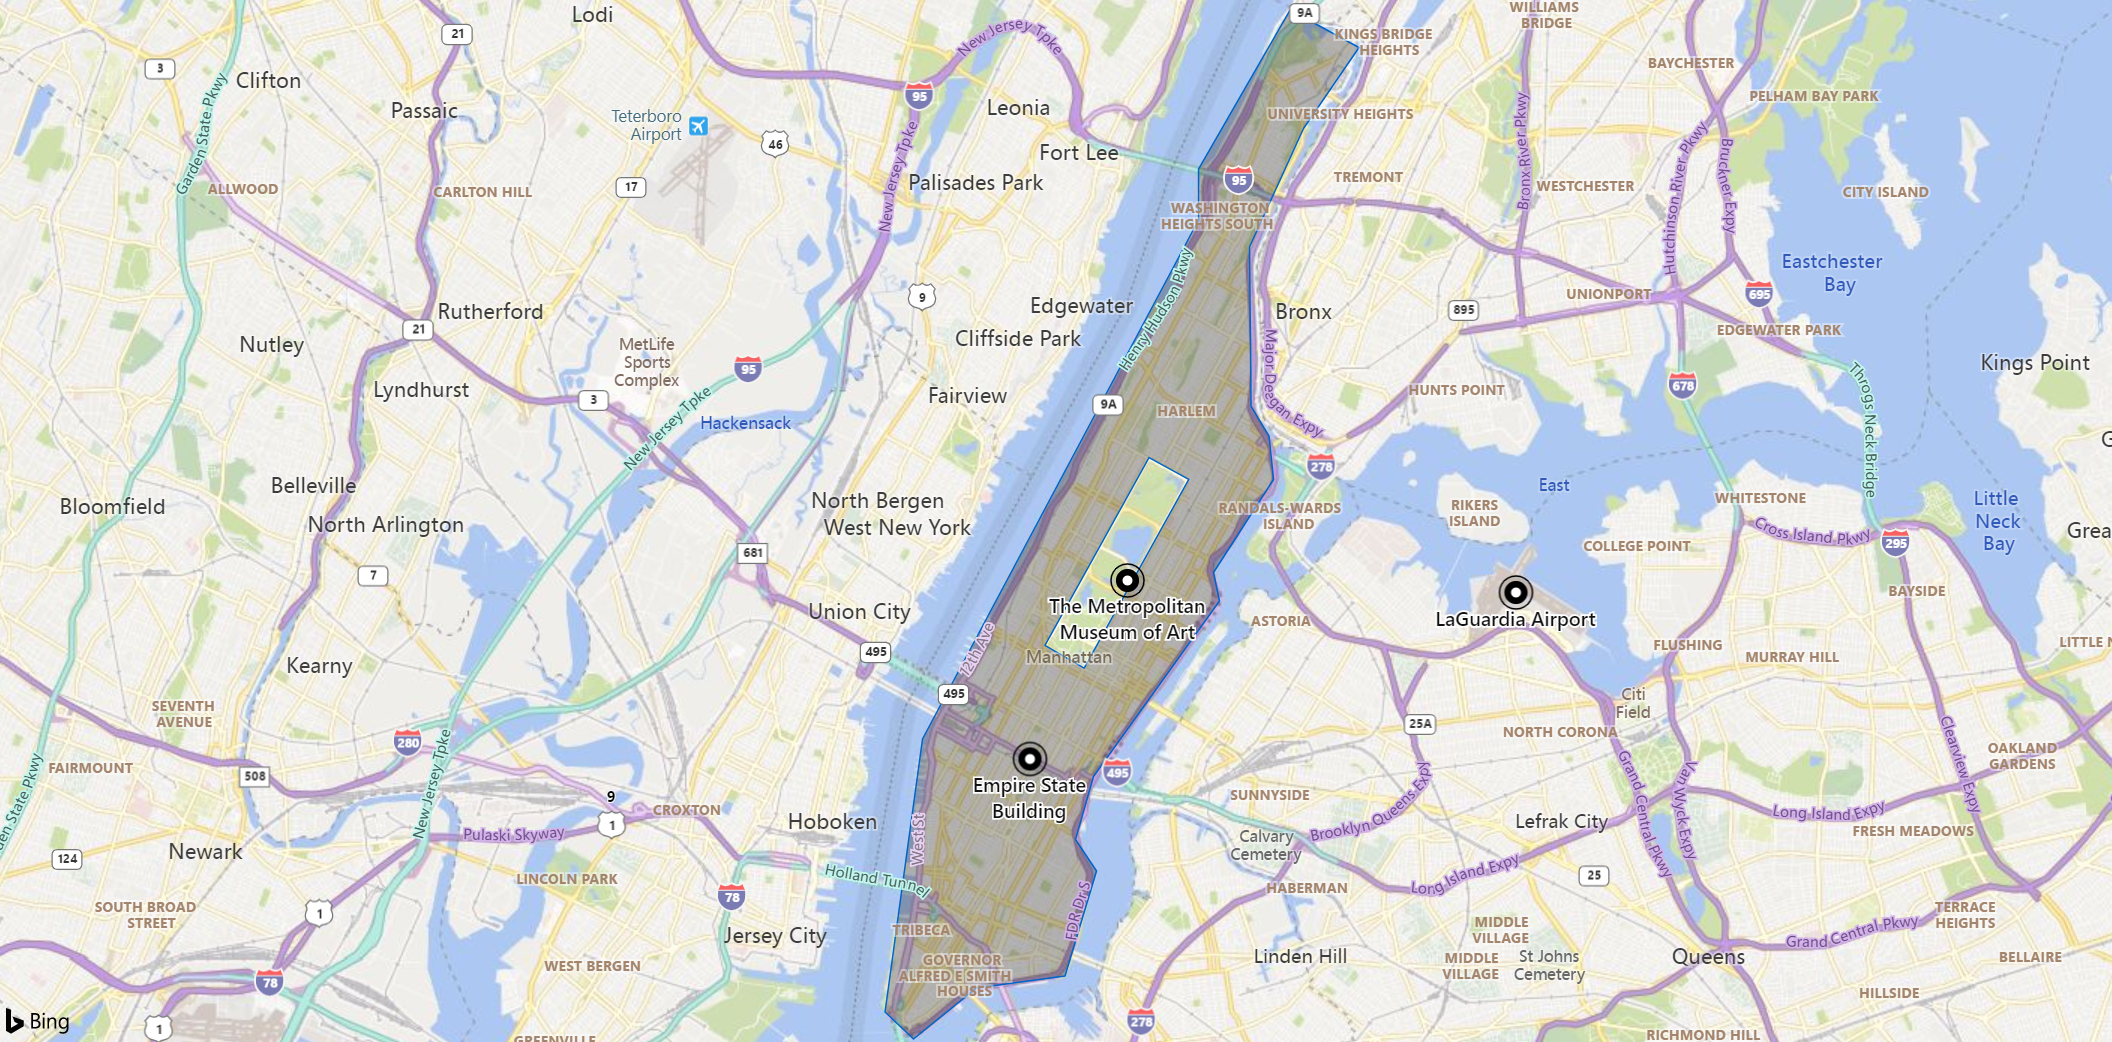 Schermopname van een kaart van de omgeving van Manhattan, met markeringen voor een oriëntatiepunt, een museum en een luchthaven. Het eiland wordt lichter gekleurd weergegeven, met uitzondering van Central Park.